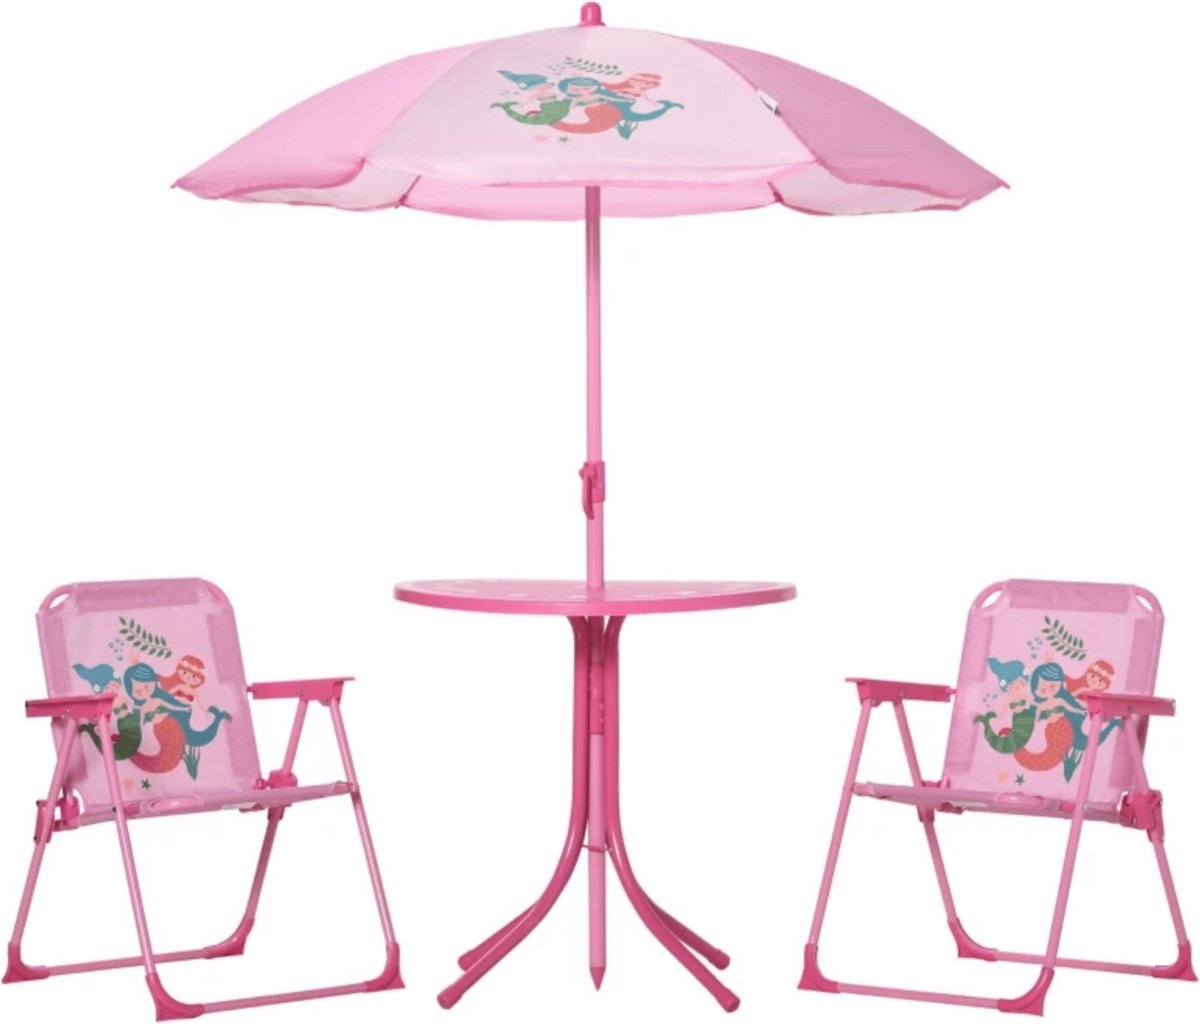 Kinder tuinset - Picknicktafel - Tuinset kinderen - Picknicktafel kinderen - Campingstoel kind - Parasol - Roze